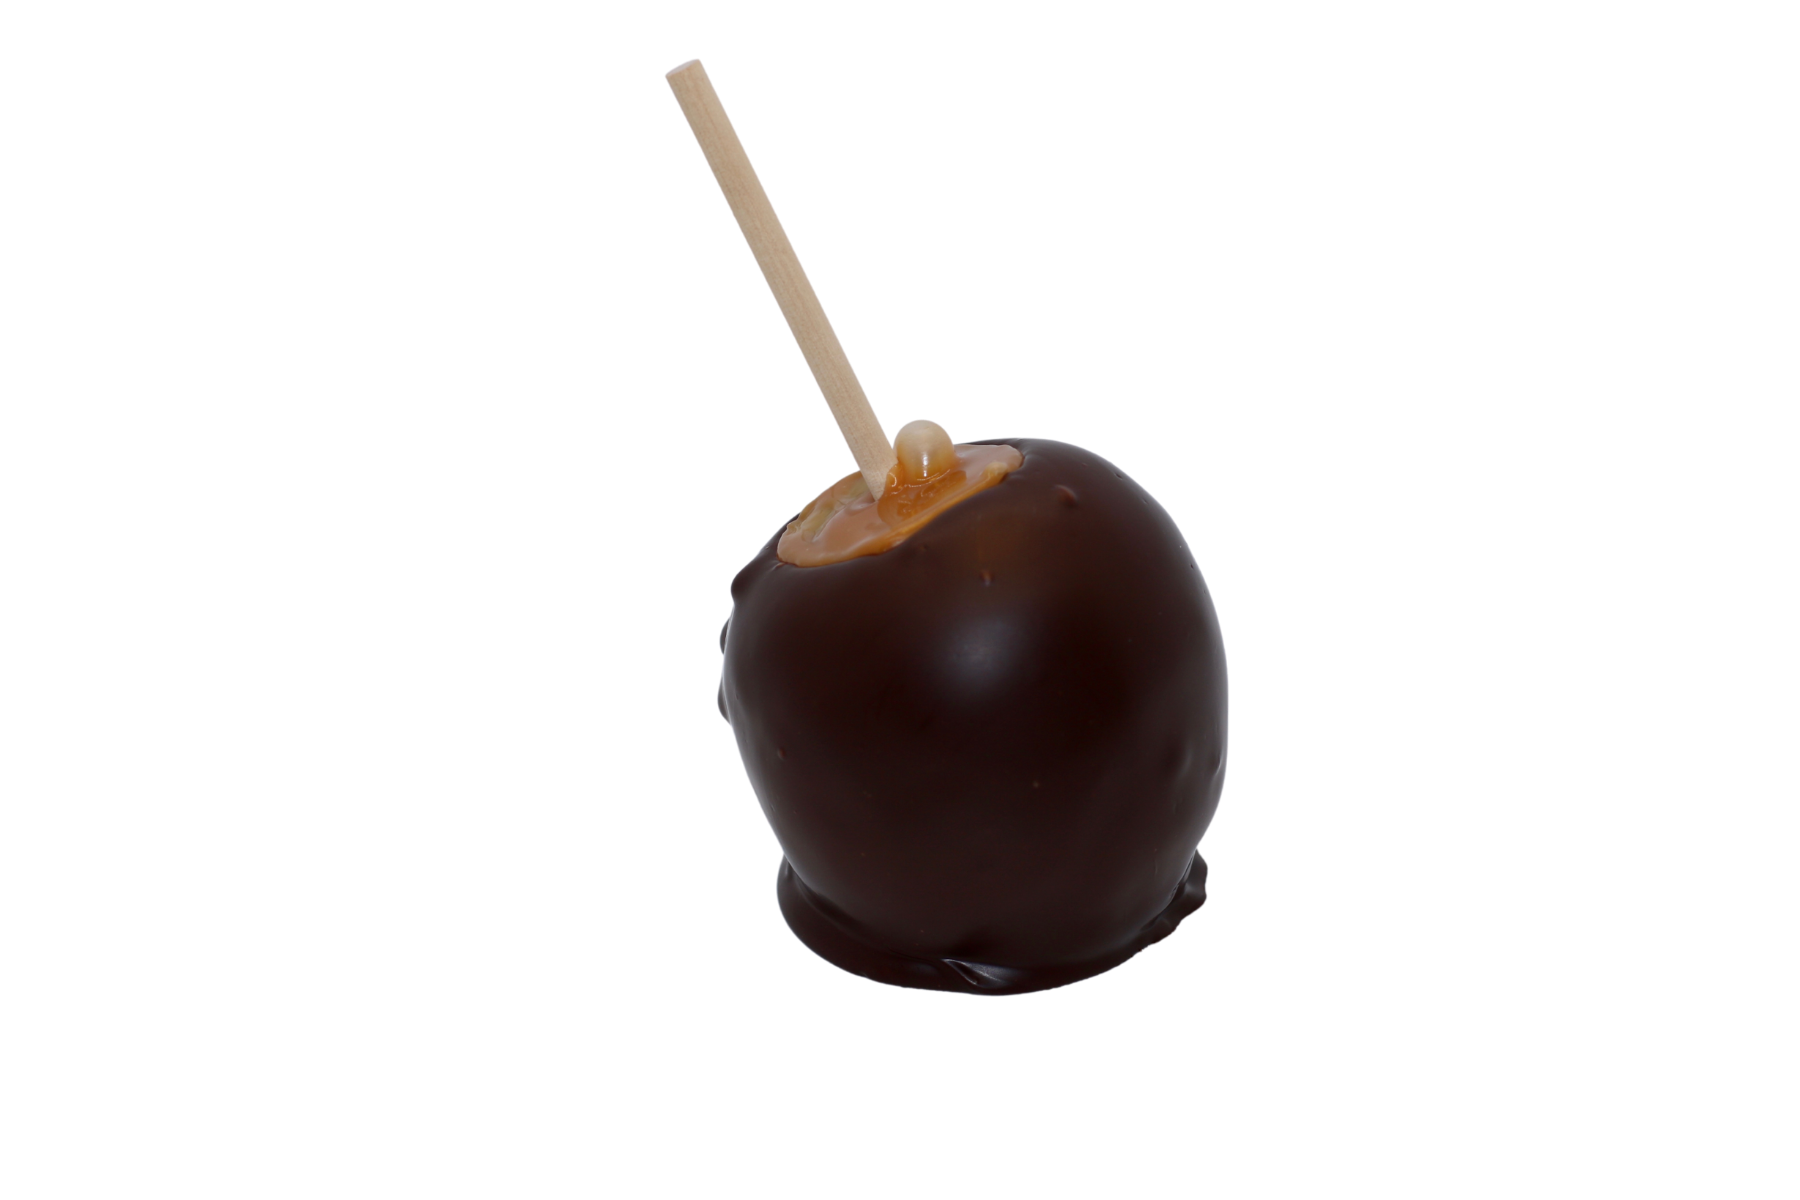 Dark Chocolate Caramel Apple